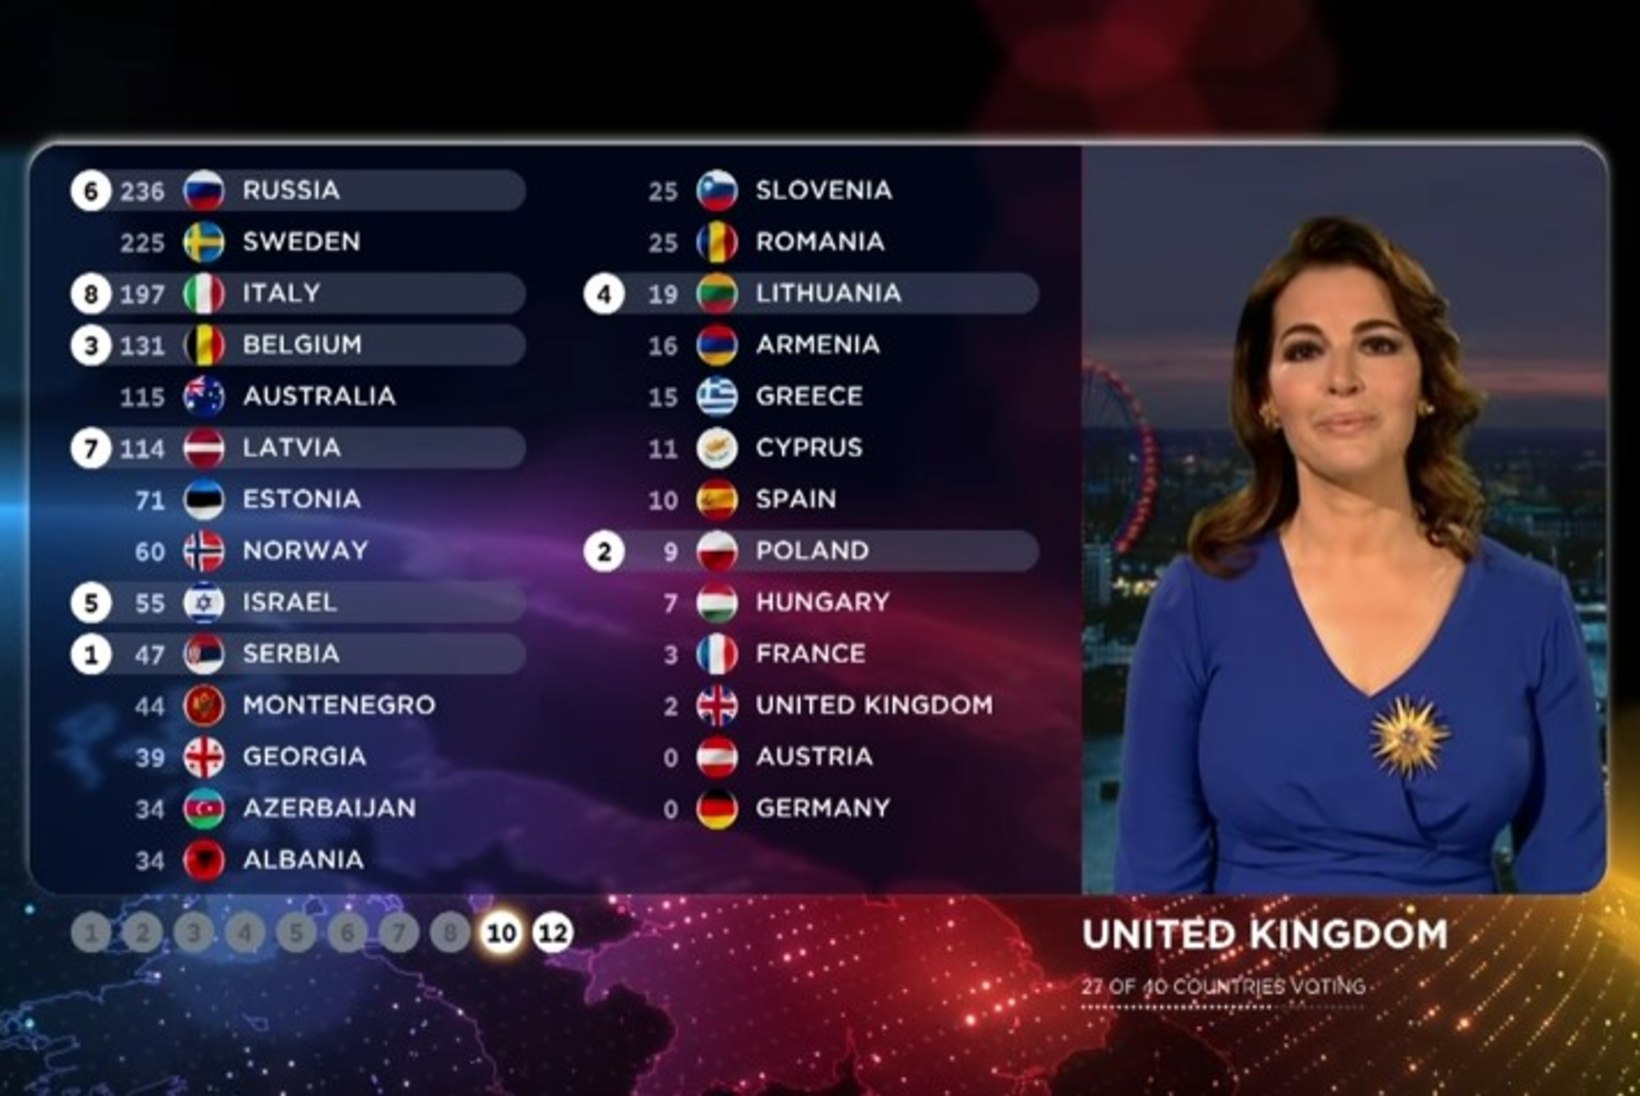 Pihlamägi: Eurovisioni uus hääletussüsteem tundub põnev